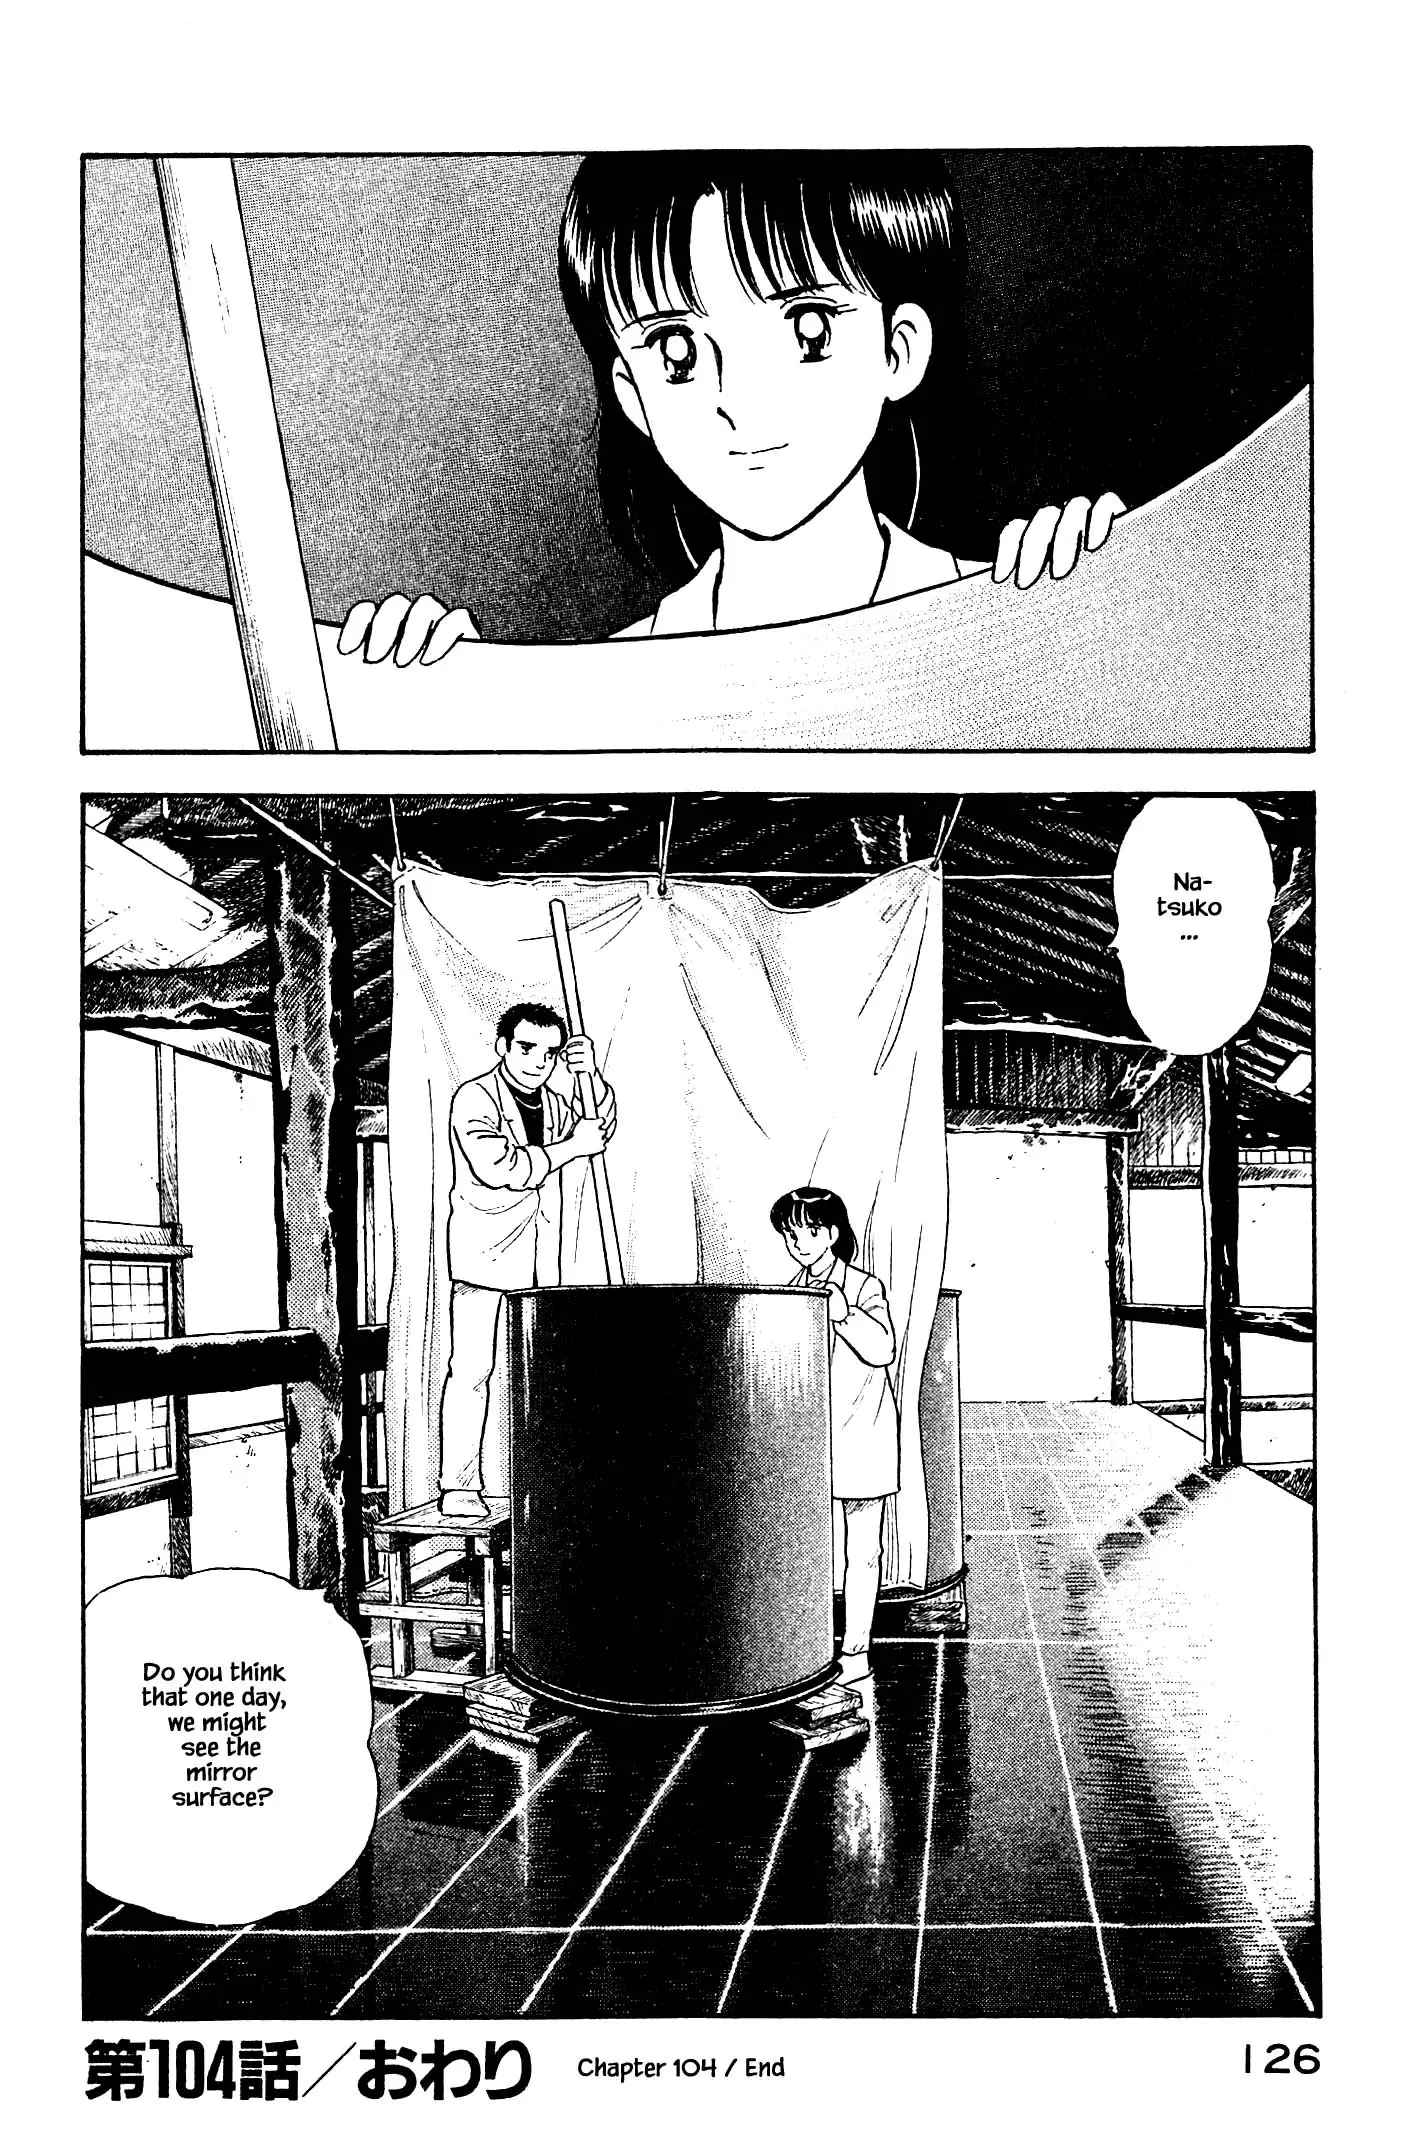 Natsuko's Sake - 104 page 20-6ea4f598